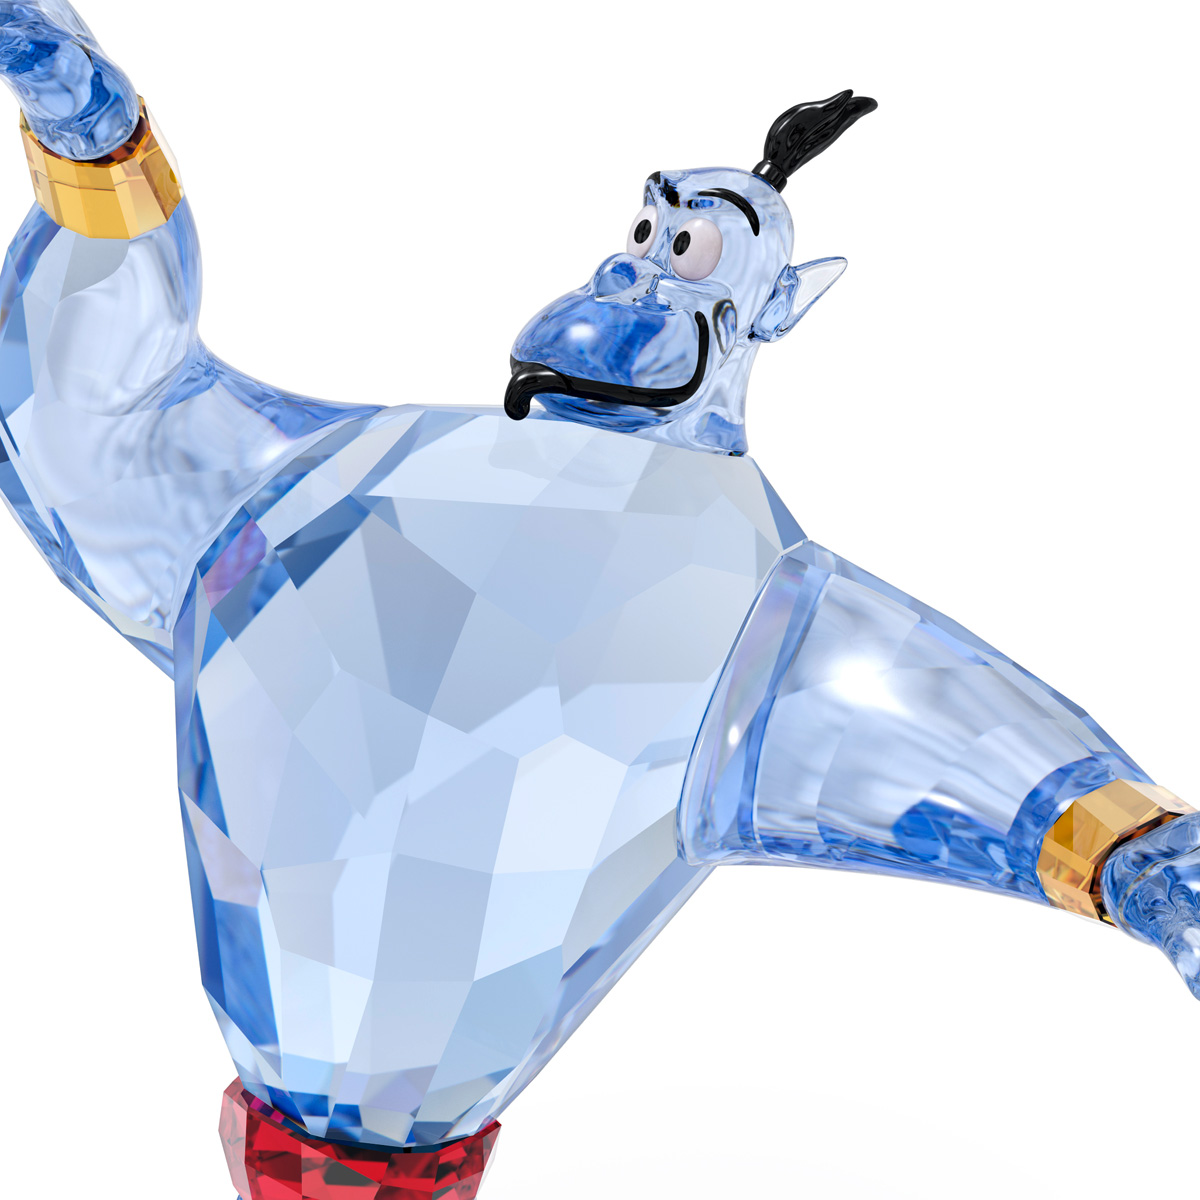 Swarovski Crystal Disney Aladdin Genie